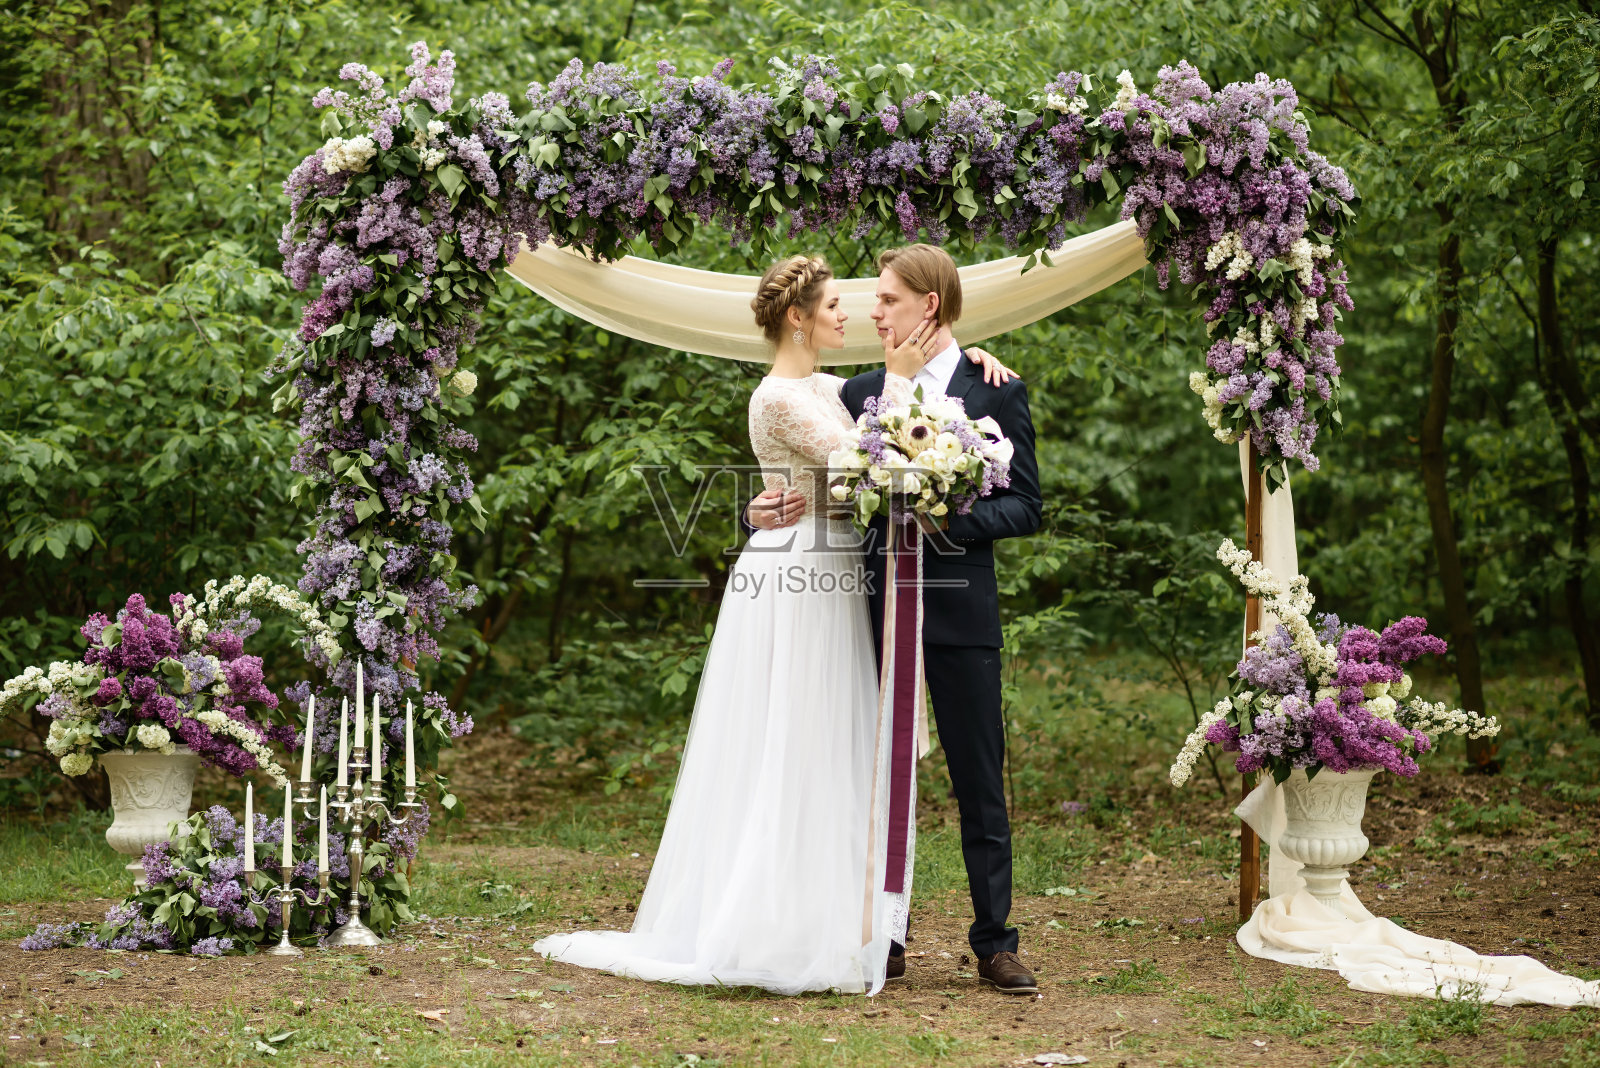 新郎新娘在紫丁香的拱门旁照片摄影图片